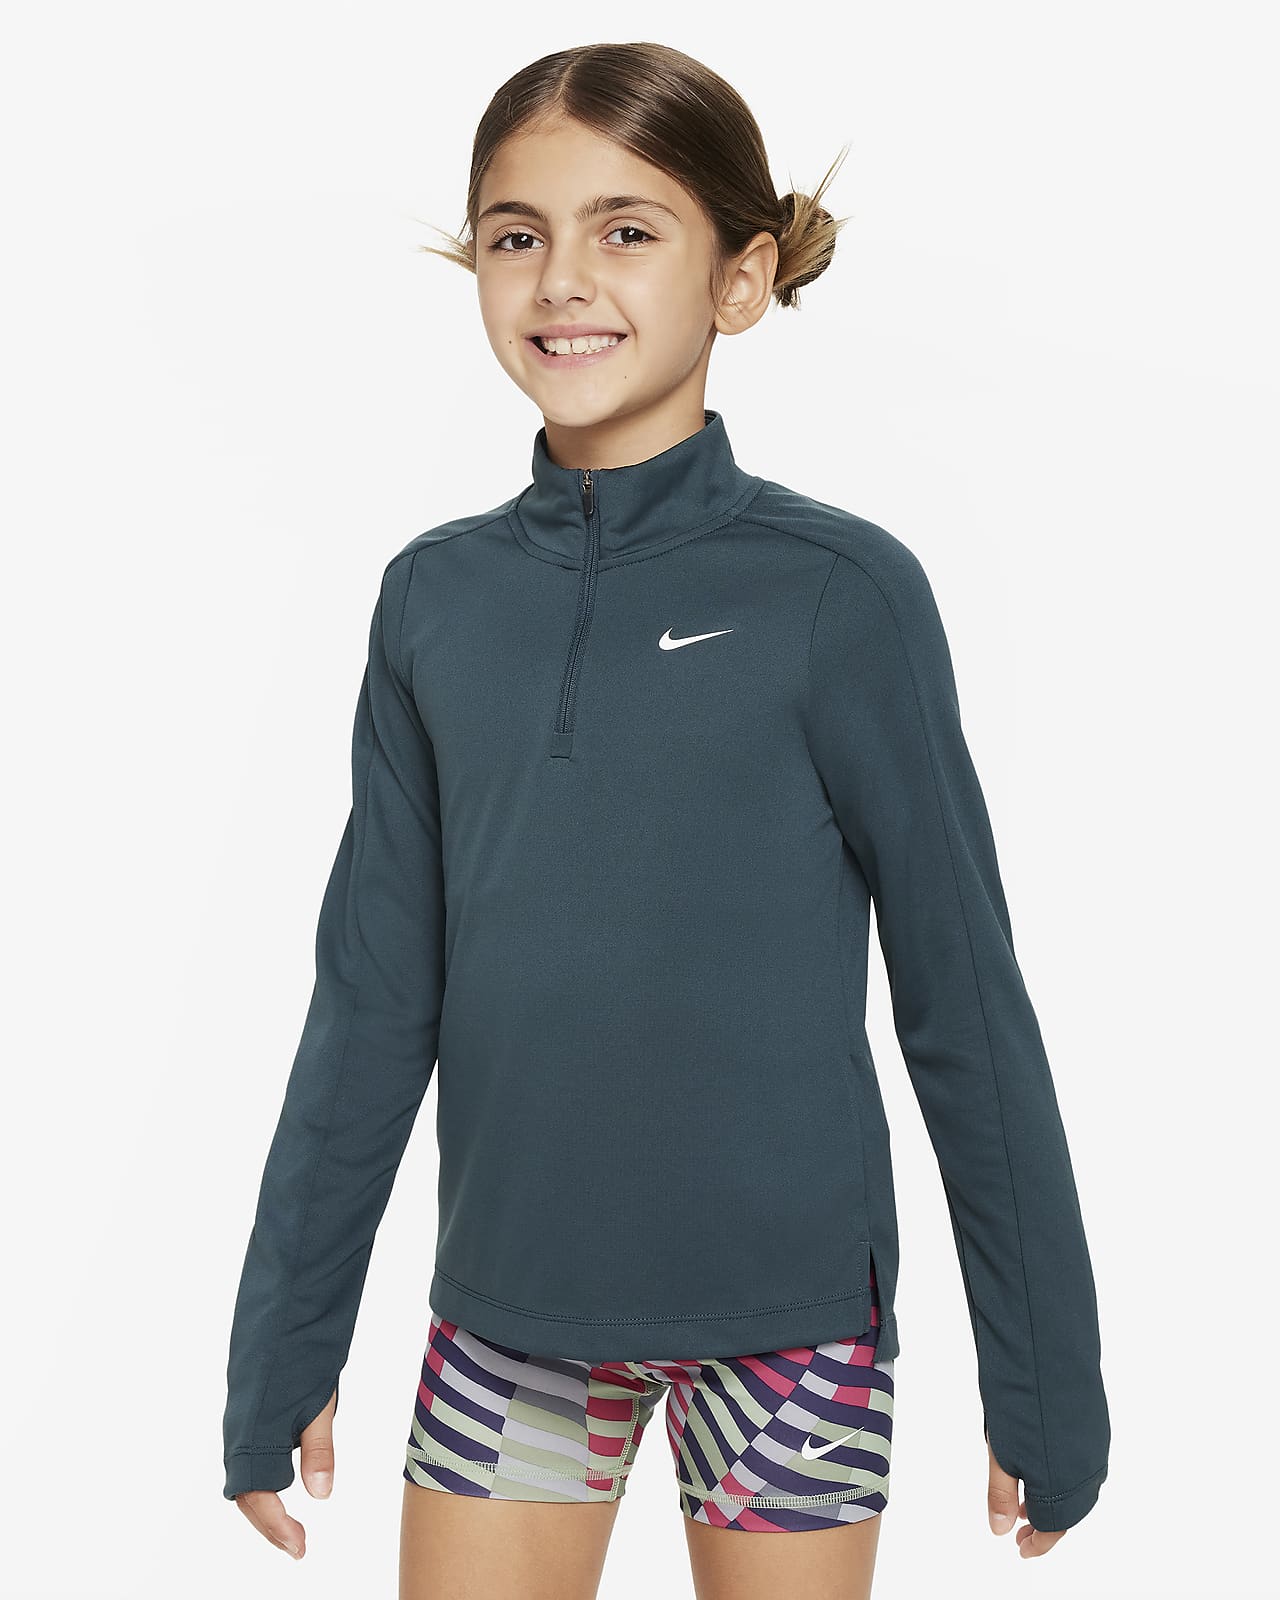 Μακρυμάνικη μπλούζα με φερμουάρ στο μισό μήκος Nike Dri-FIT για μεγάλα κορίτσια